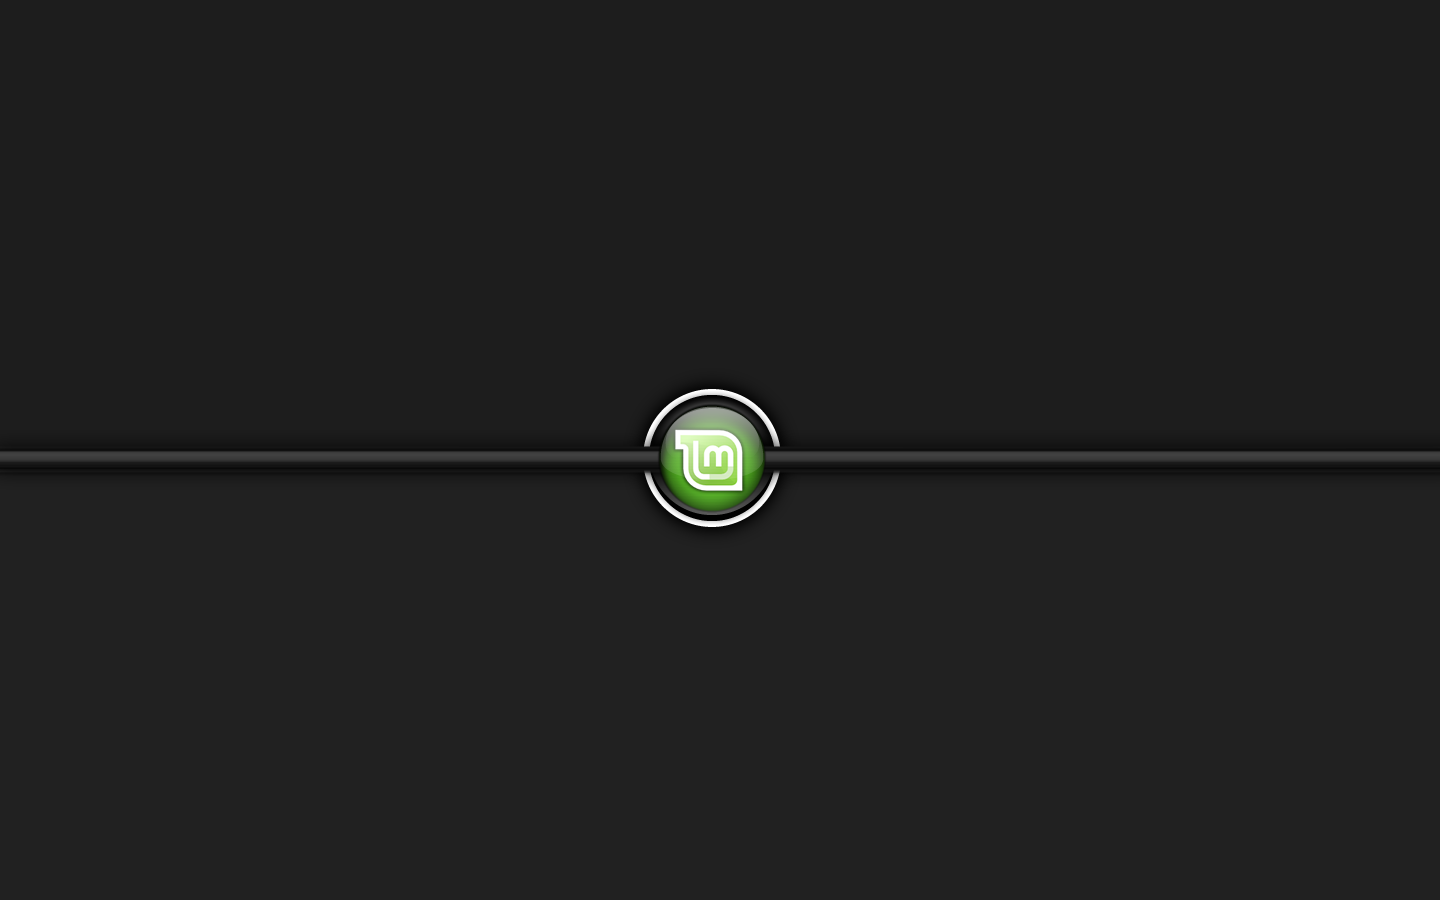 Linux Mint Logo Black Background Image Wallpaper For Desktop